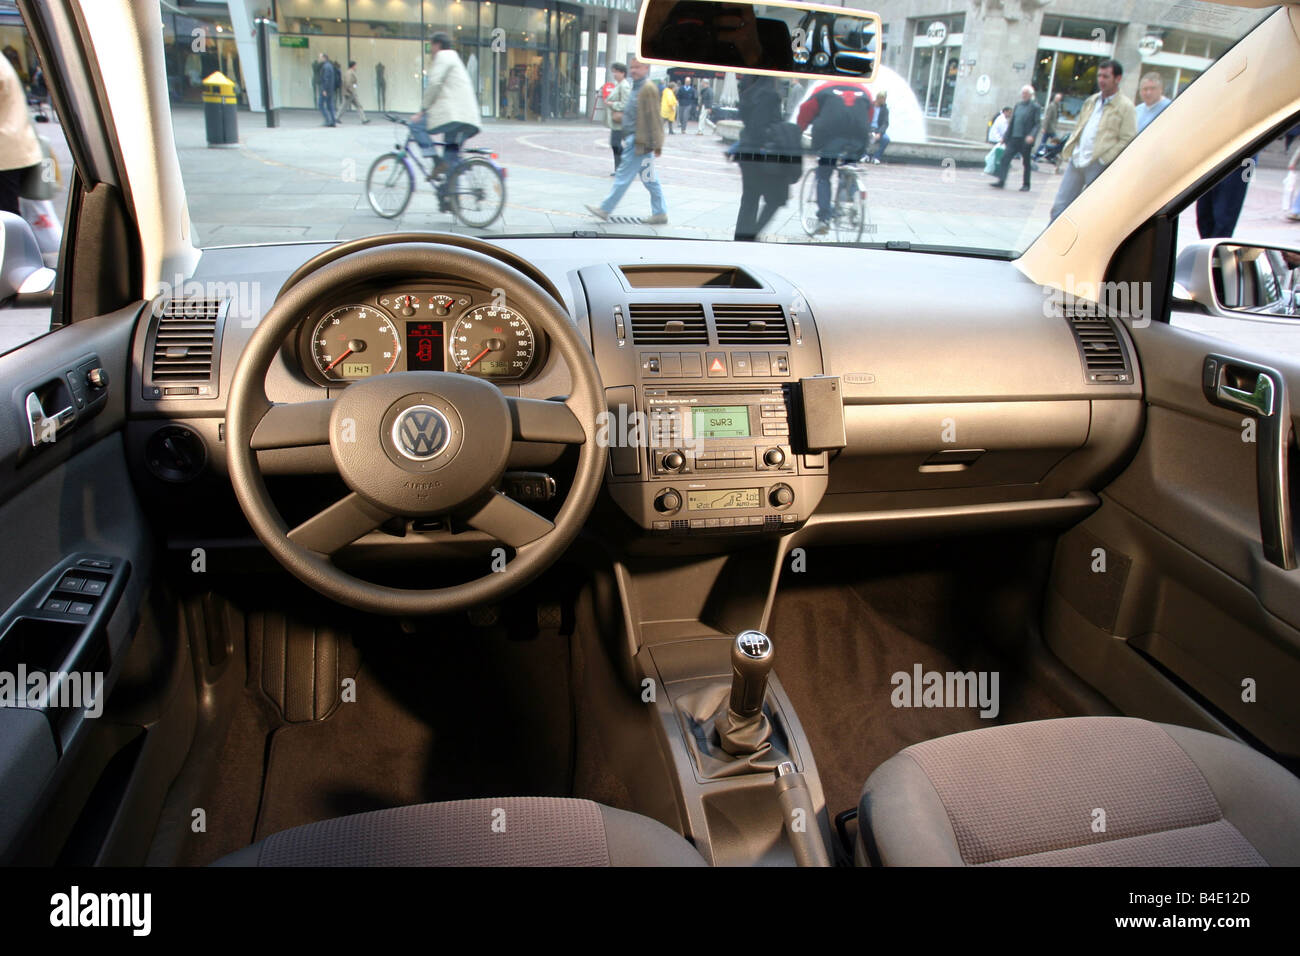 Auto, VW Volkswagen Polo 1.4 TDI, kleine ca., Limousine, Silber, Bj. 2002-,  Innenansicht, Innenraum Ansicht, Cockpit, Tech Stockfotografie - Alamy